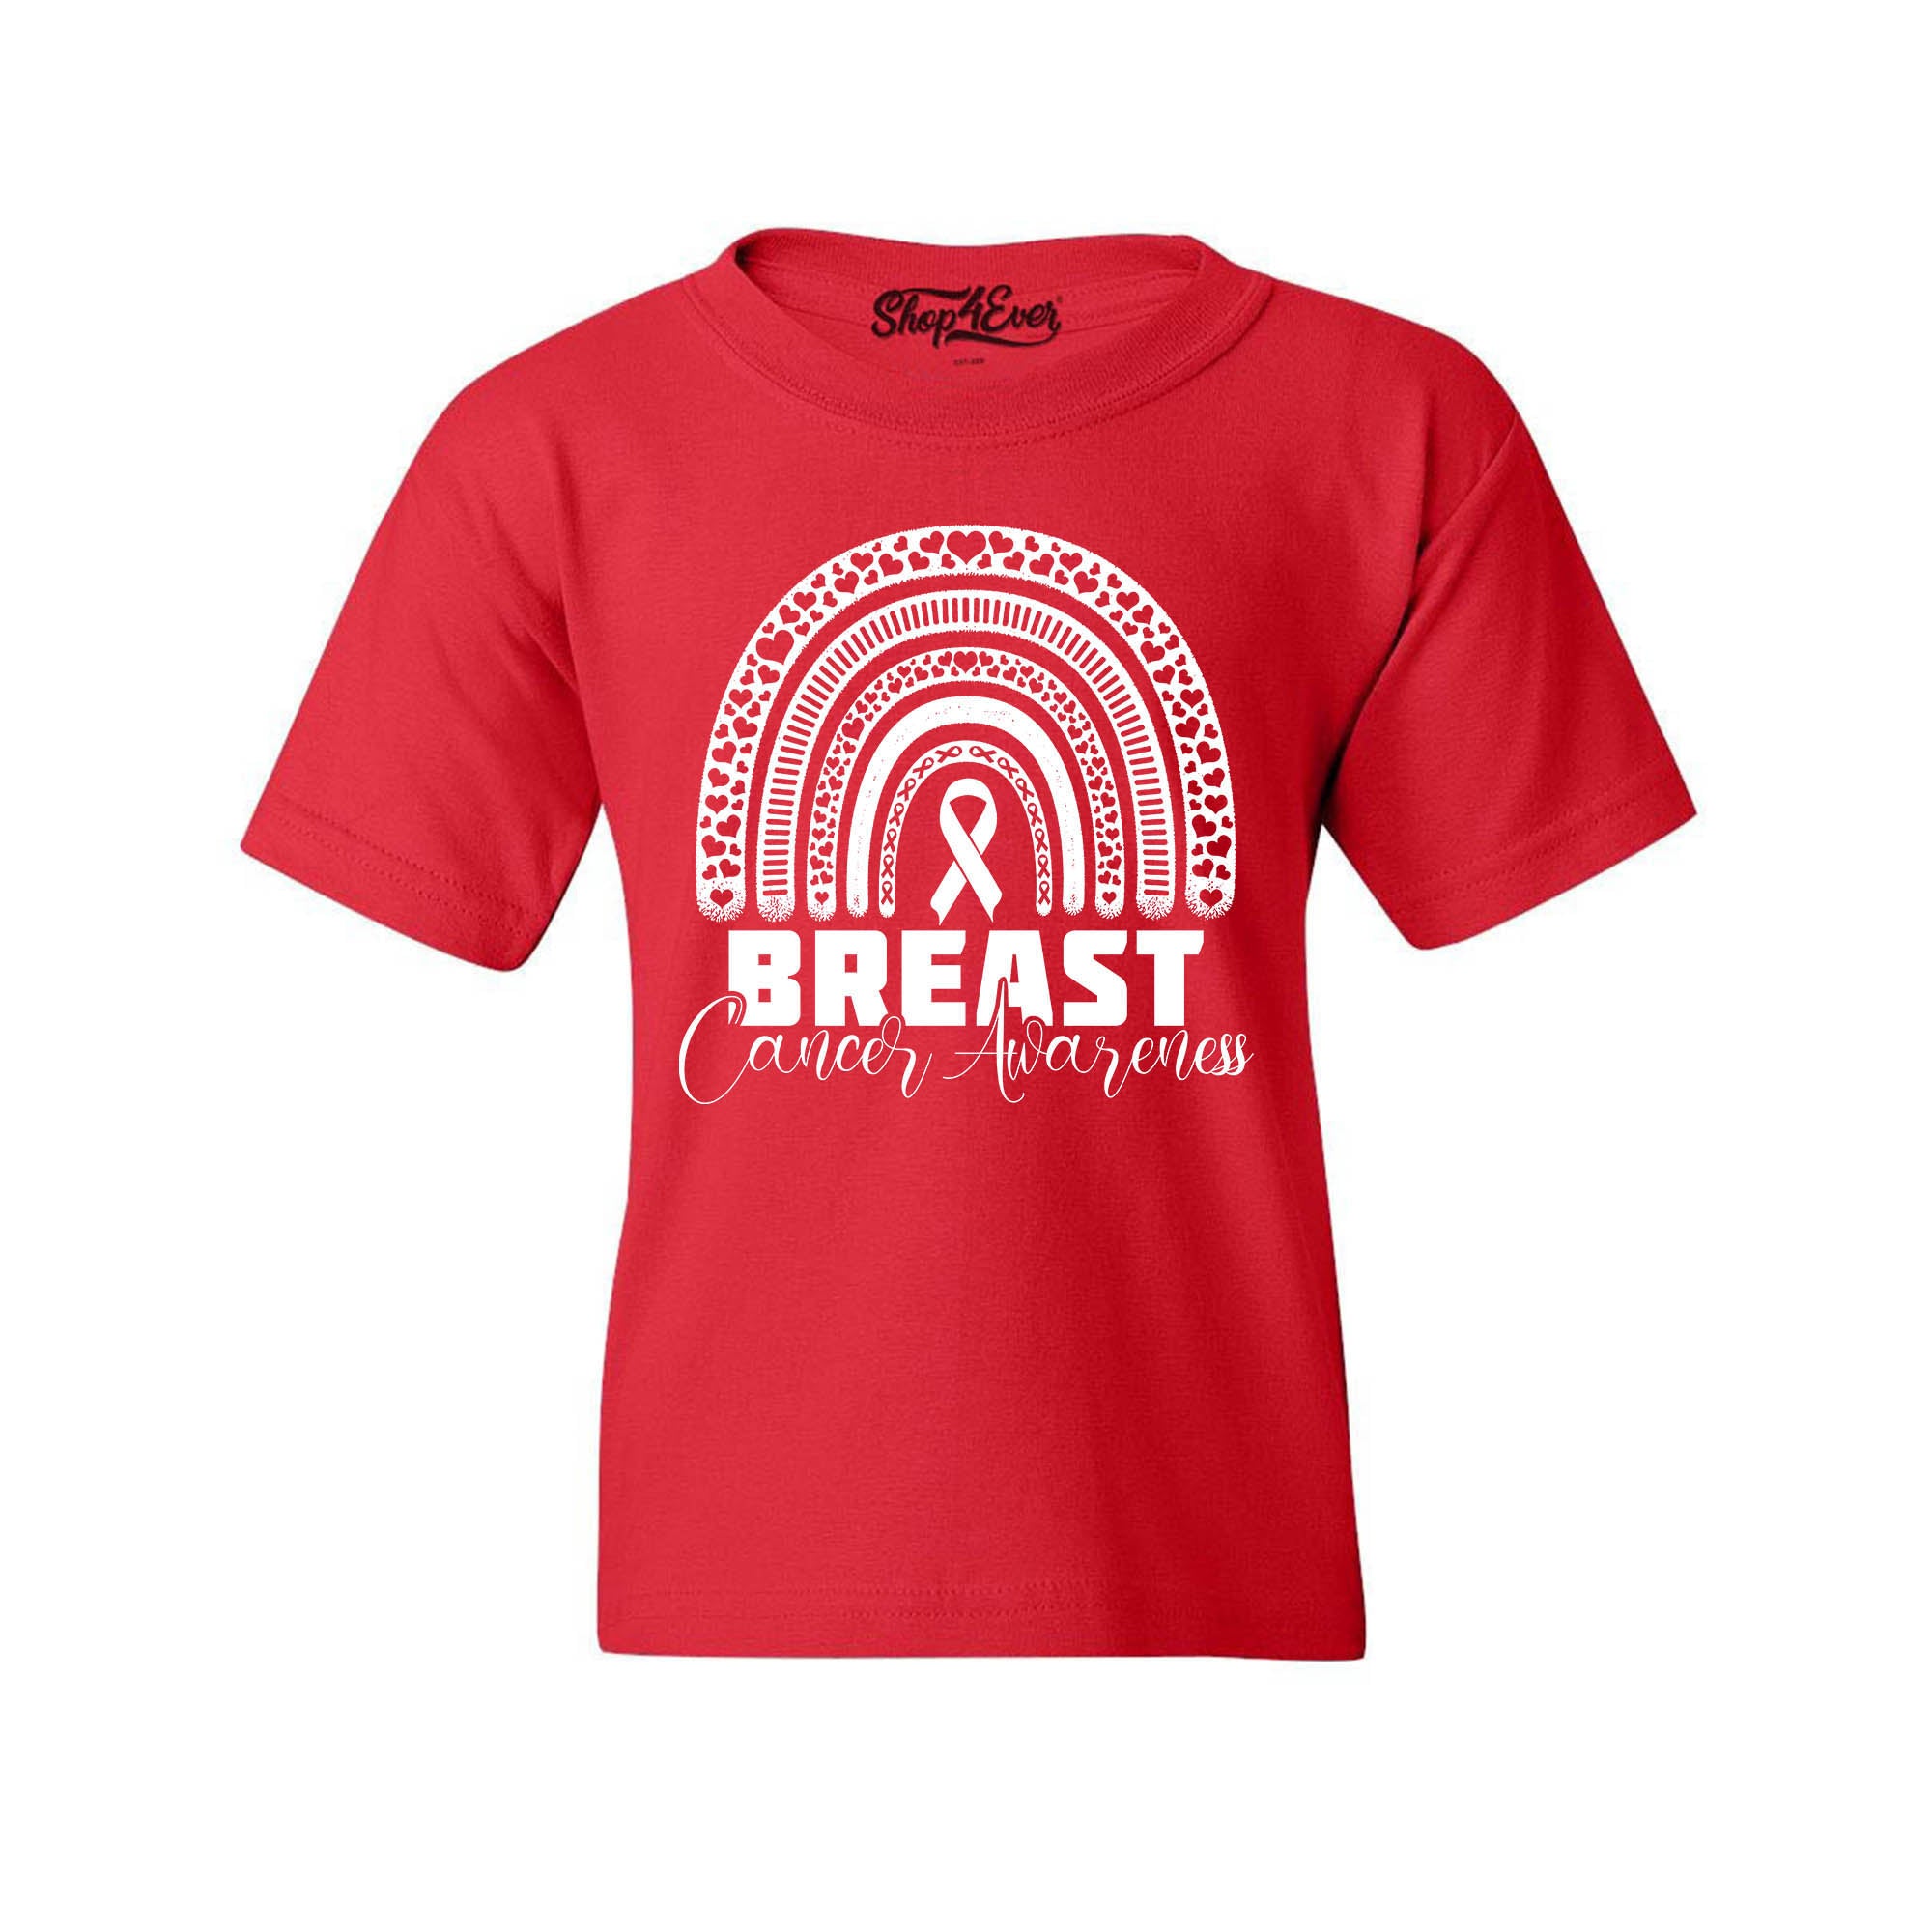 Breast Cancer Awareness Rainbow White Child's T-Shirt Kids Tee